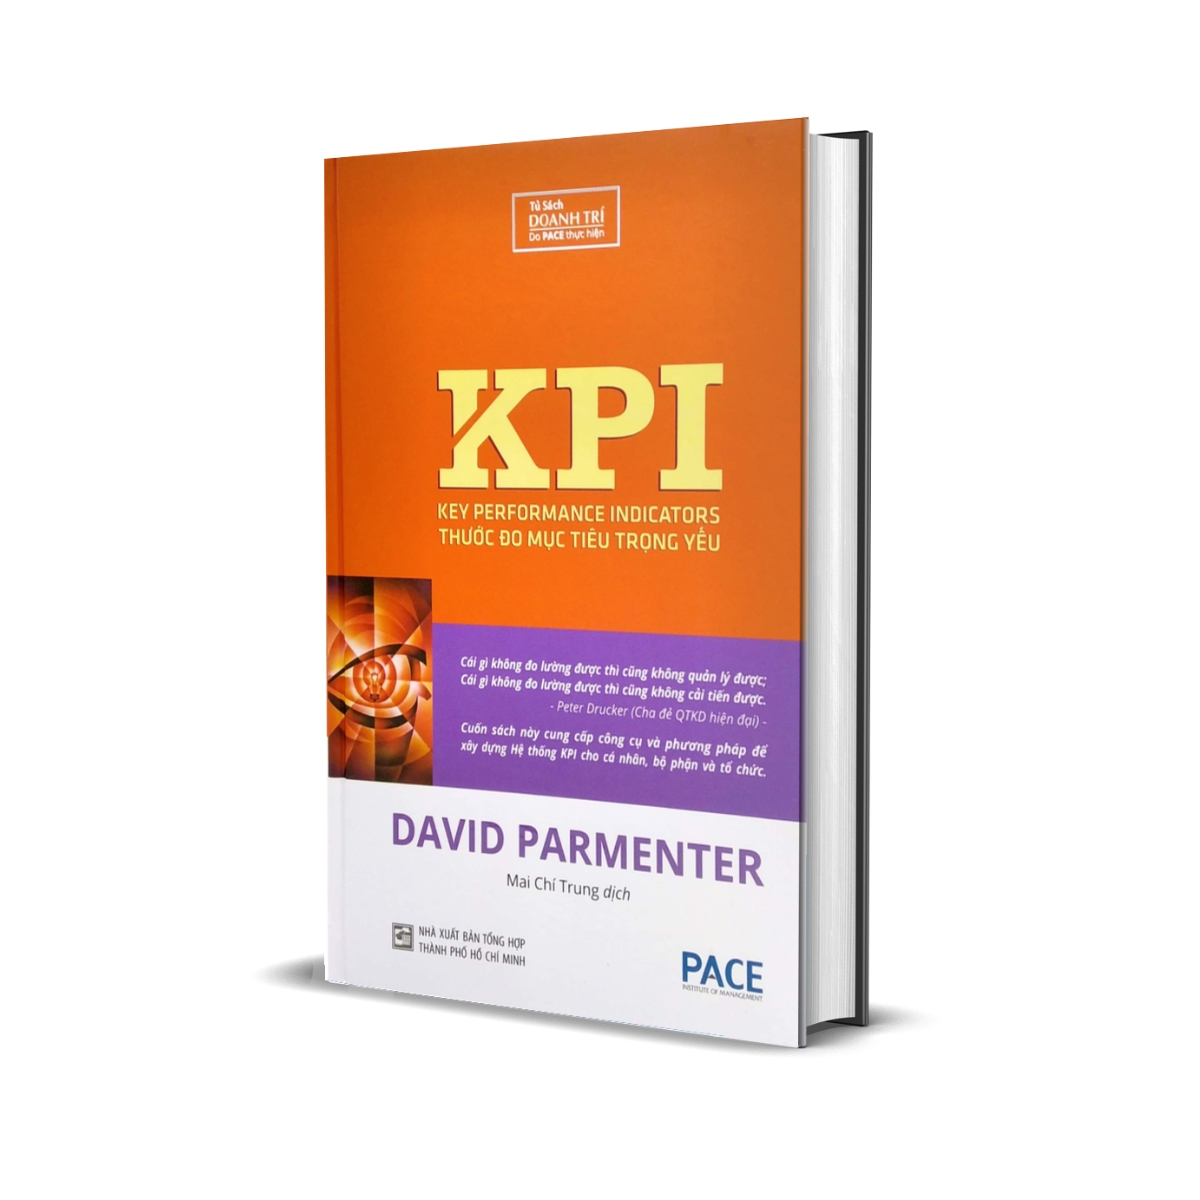 KPI - Thước Đo Mục Tiêu Trong Yếu